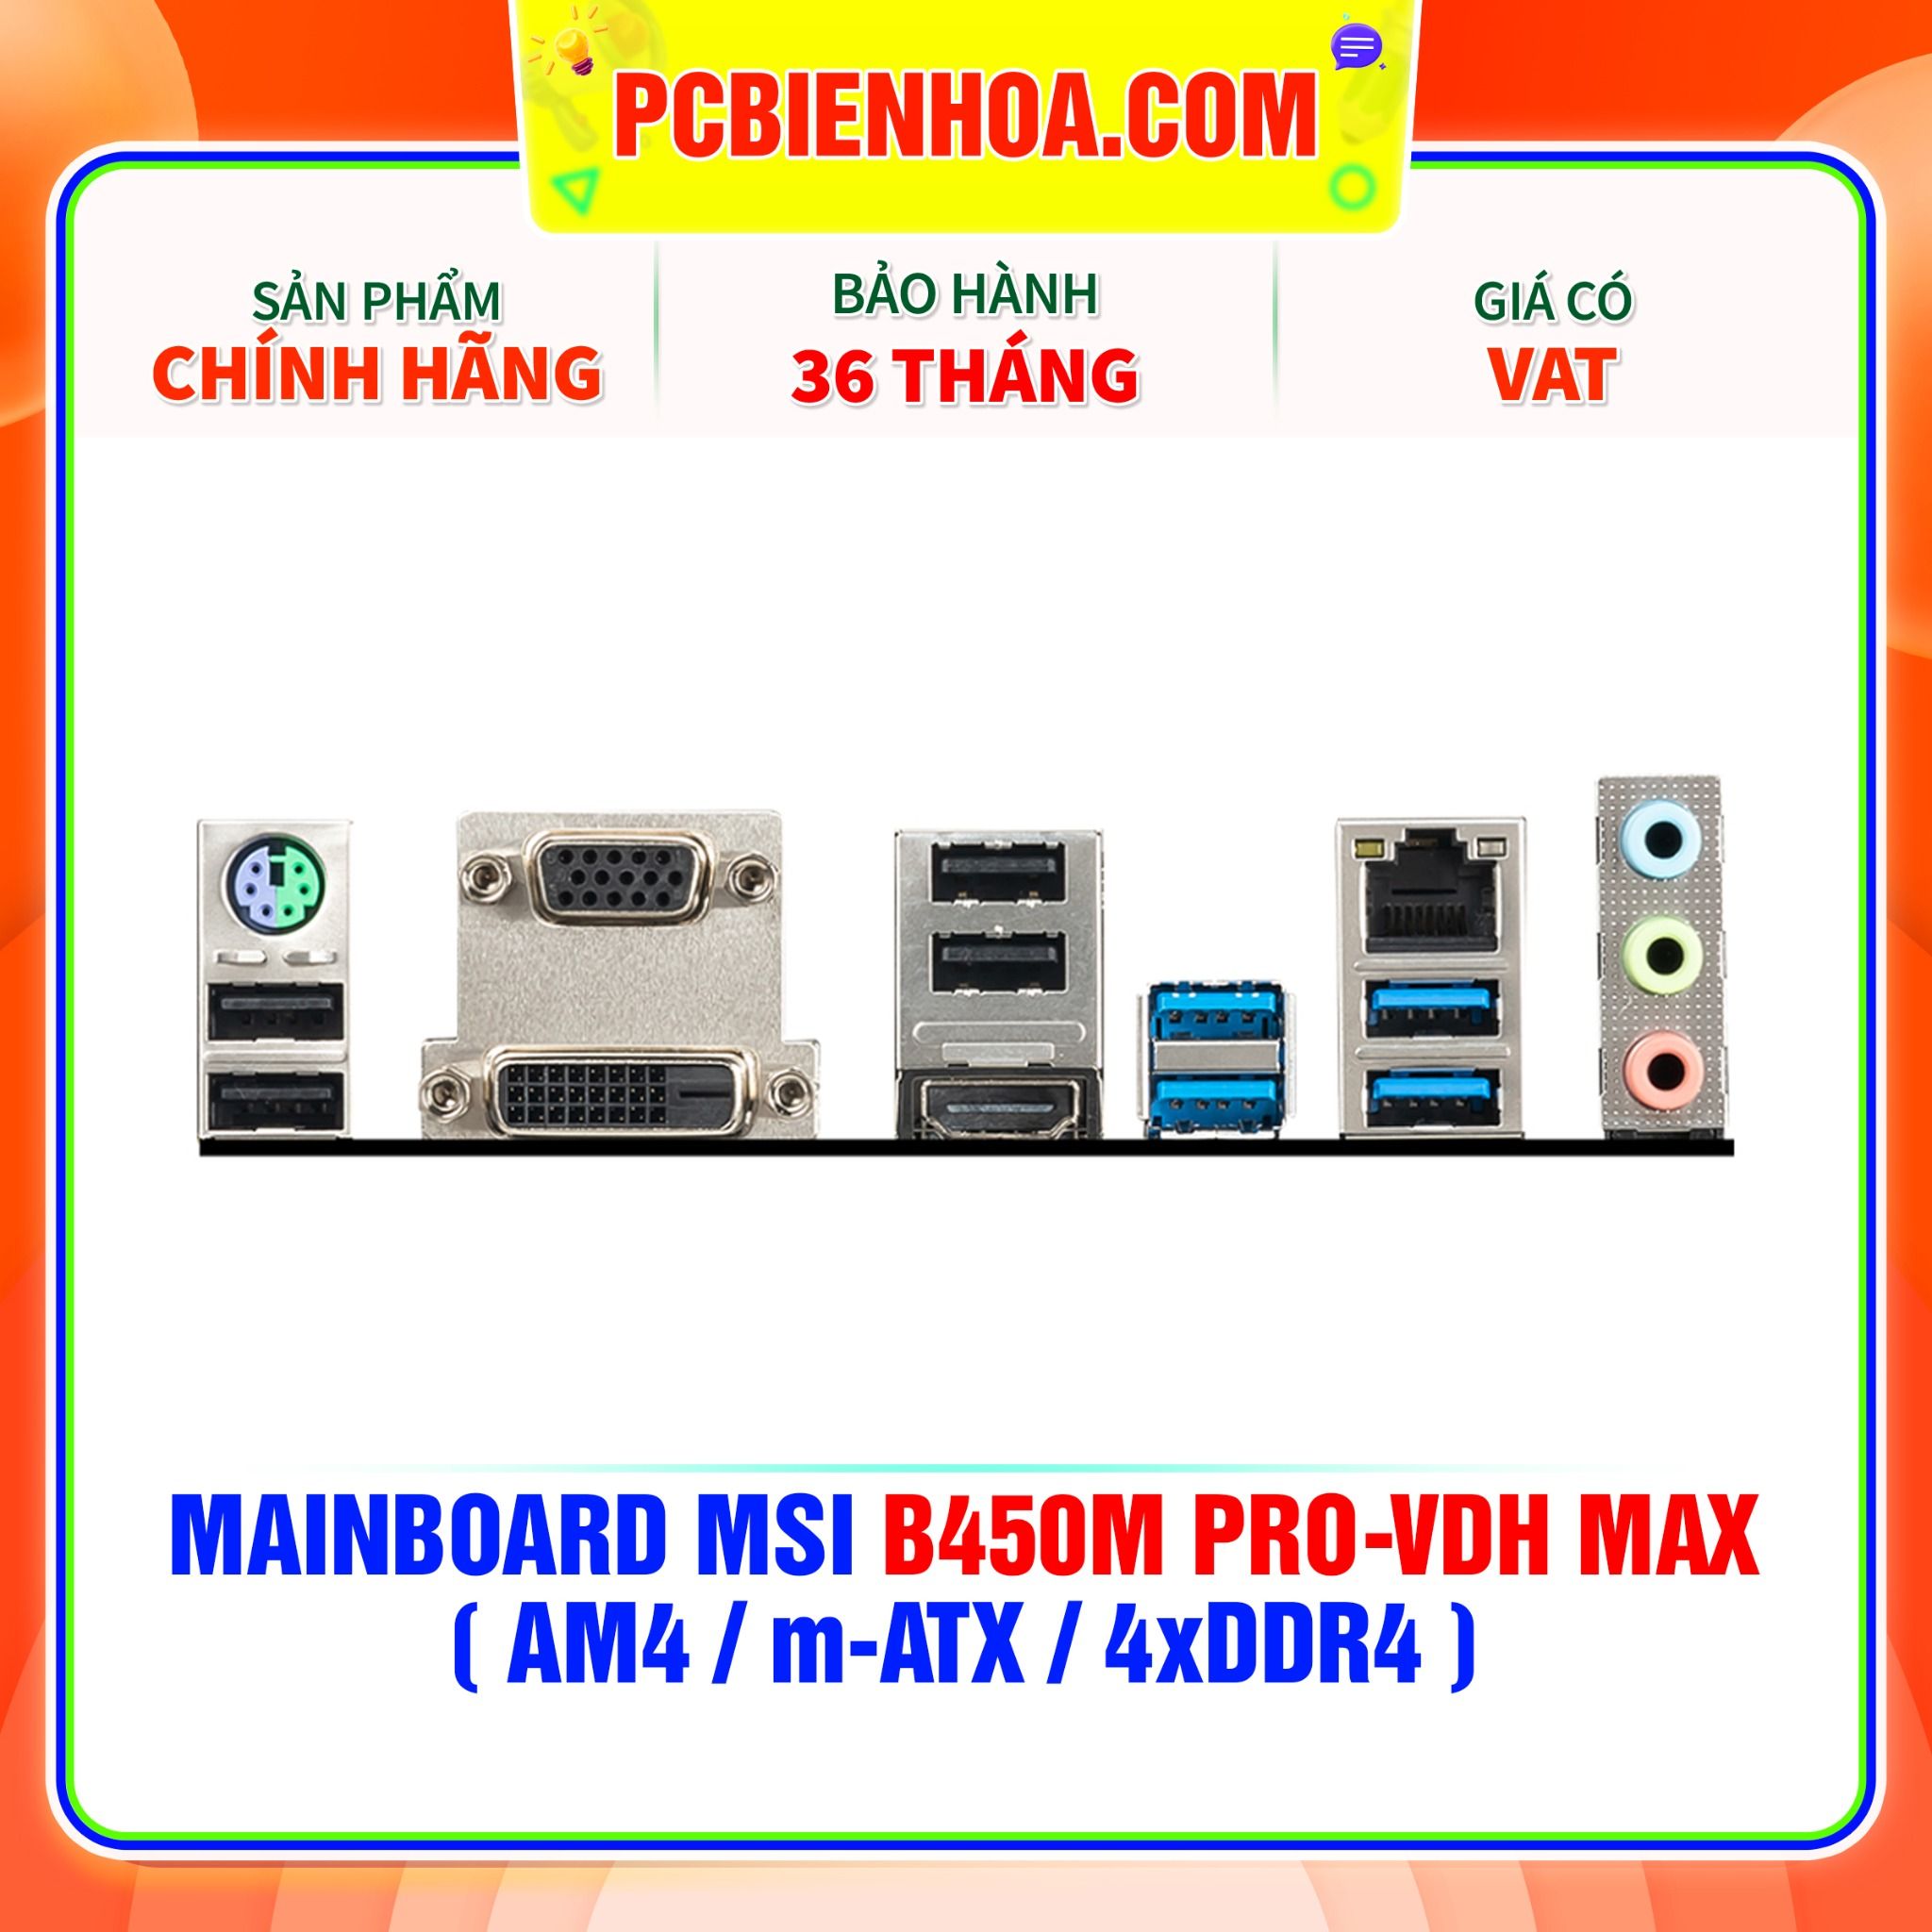  MAINBOARD MSI B450M PRO-VDH MAX ( AM4 / m-ATX / 4xDDR4 ) 